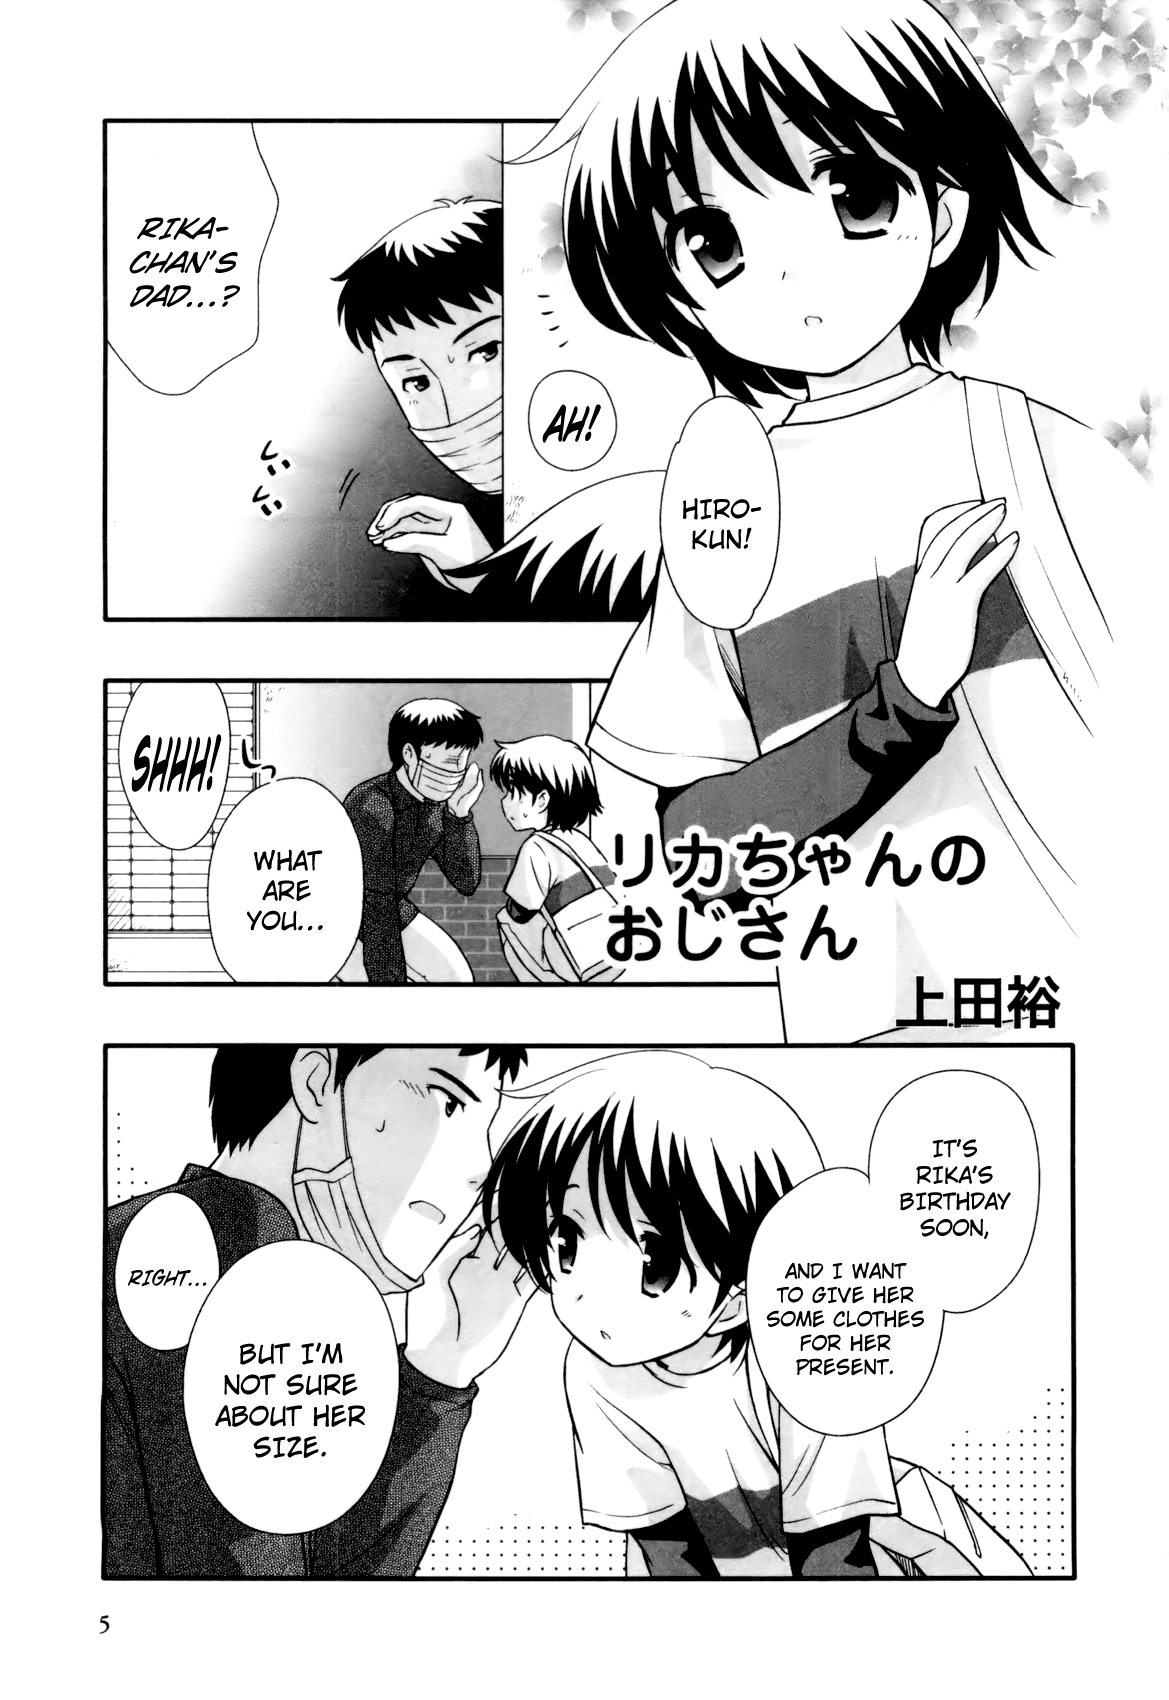 1169px x 1700px - Rika-chan no Oji-san | Rika-chan's Dad - Page 1 - Comic Porn XXX